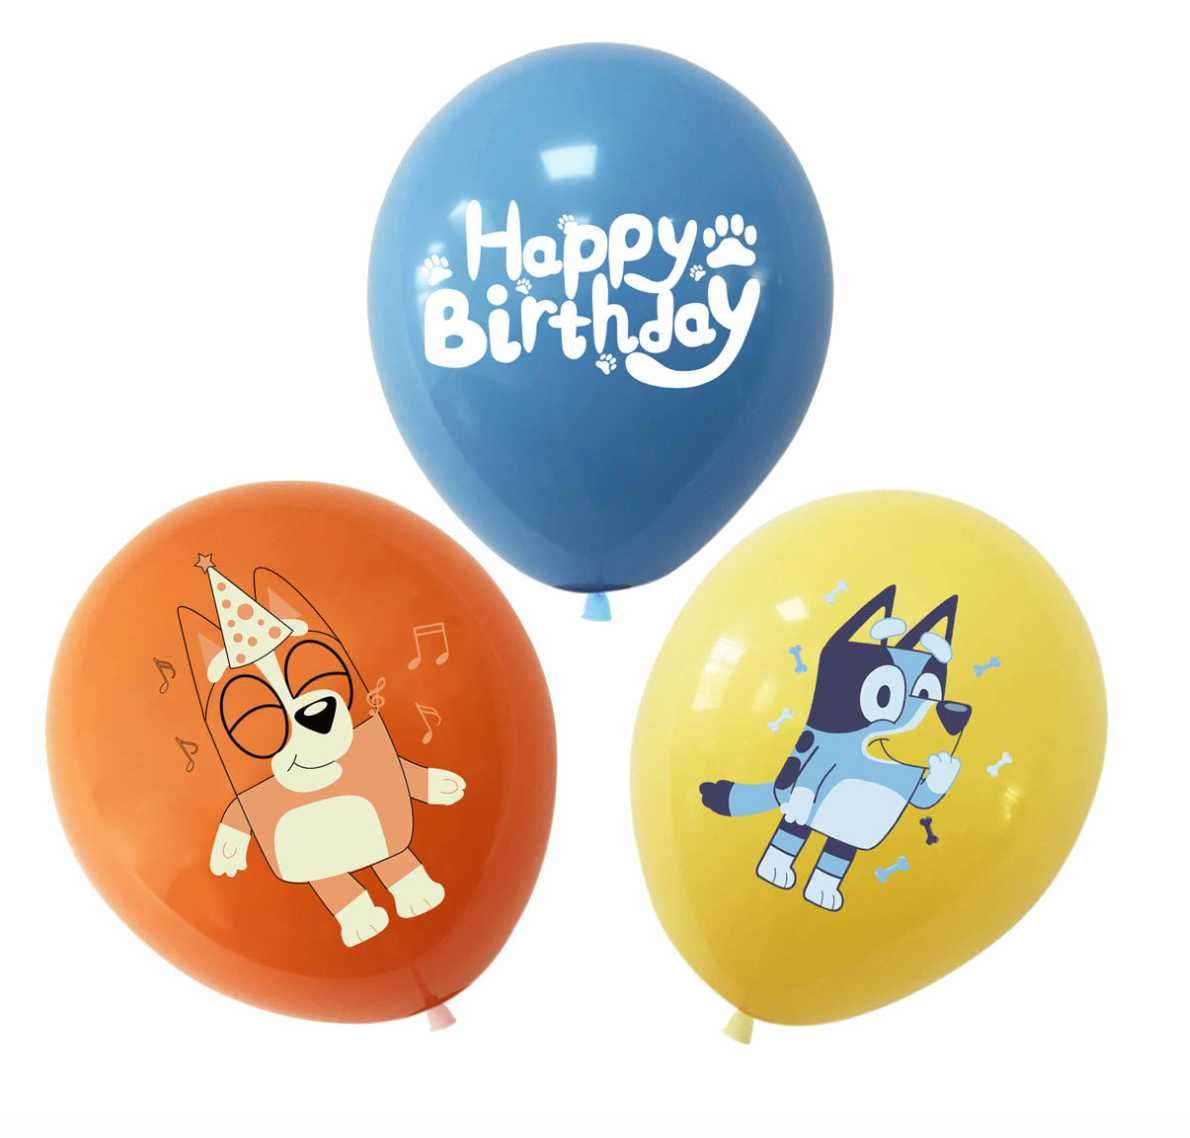 Zestaw balonów Bluey i Bingo 15 szt. balony lateksowe na urodziny